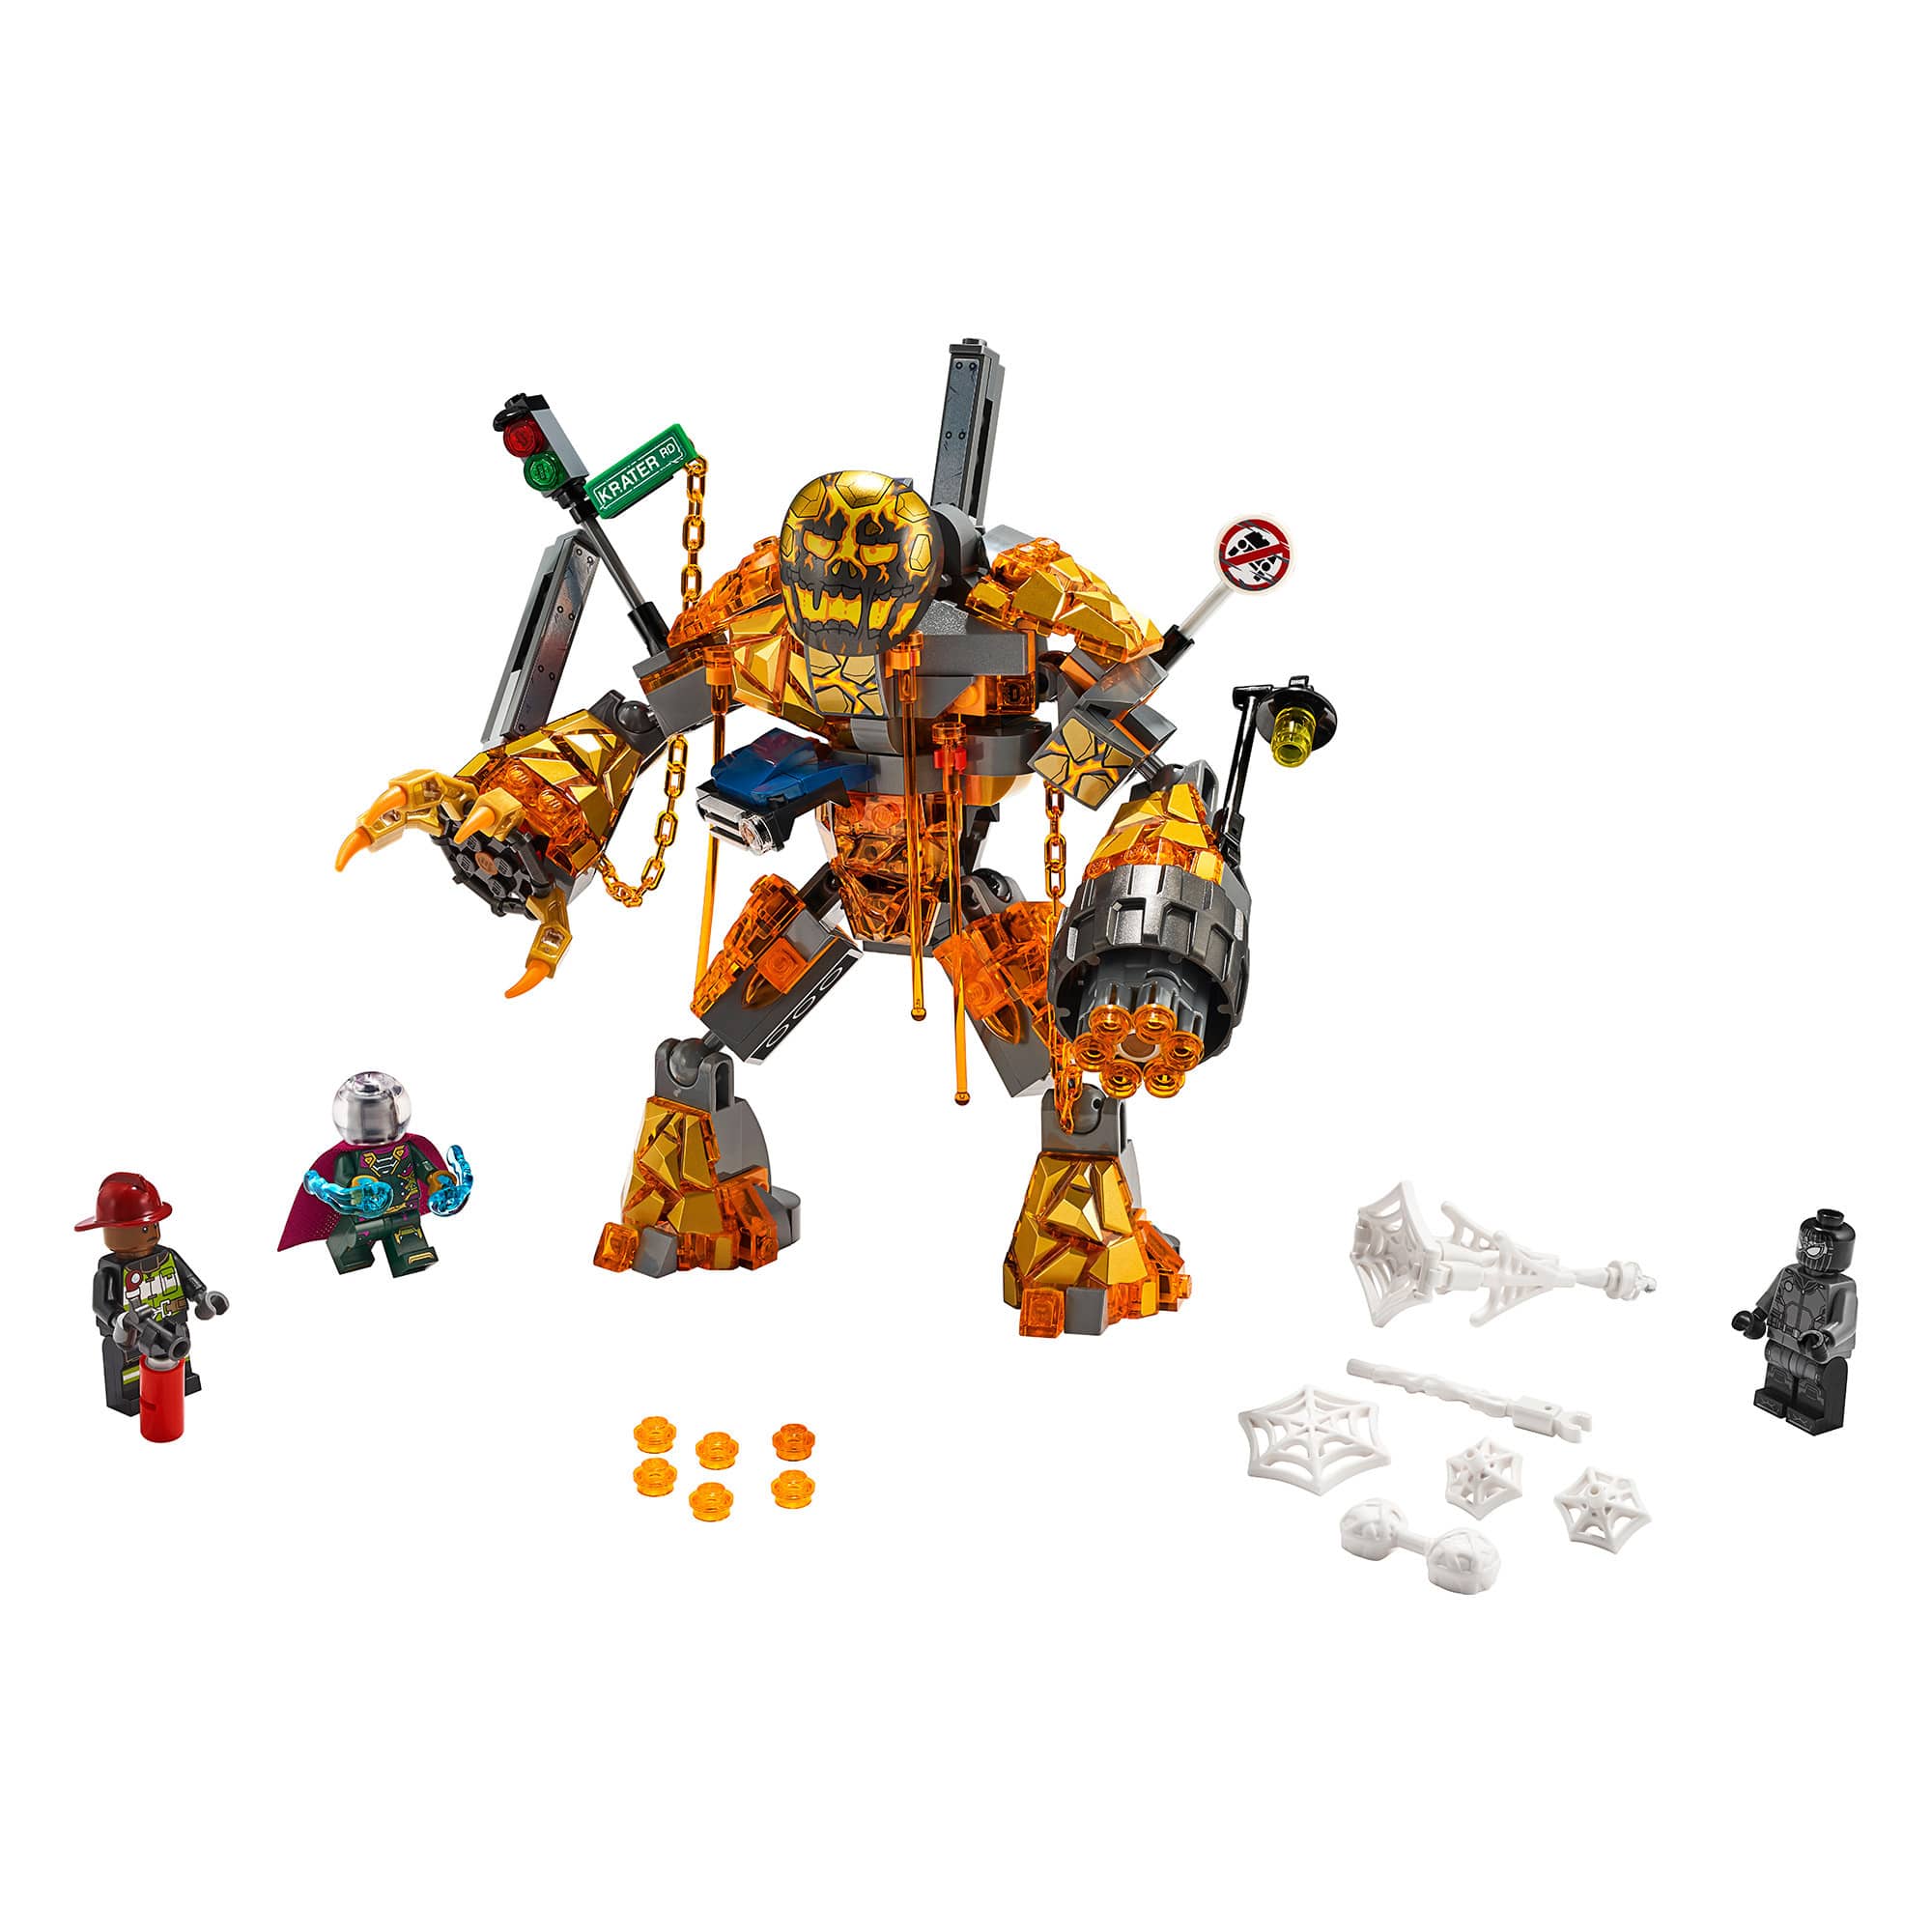 LEGO - Spider-Man - 76128 Molten Man Battle